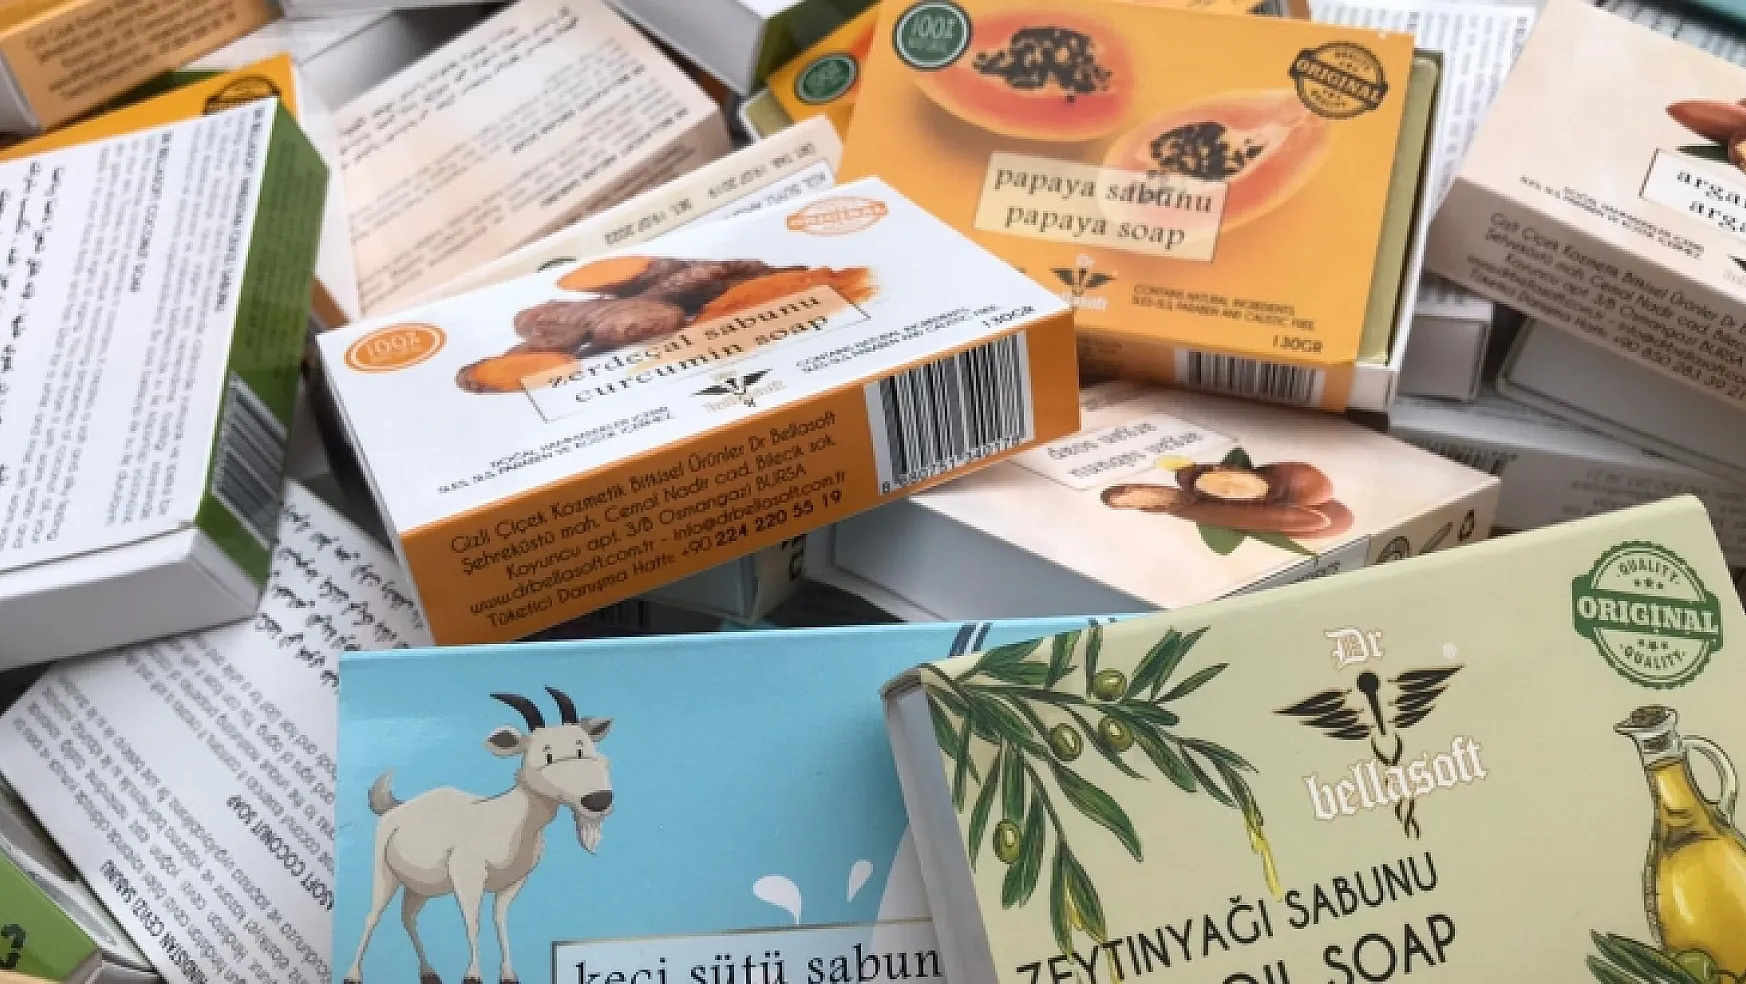 Fethiye'de aktardan koronavirüse karşı 'ücretsiz sabun'